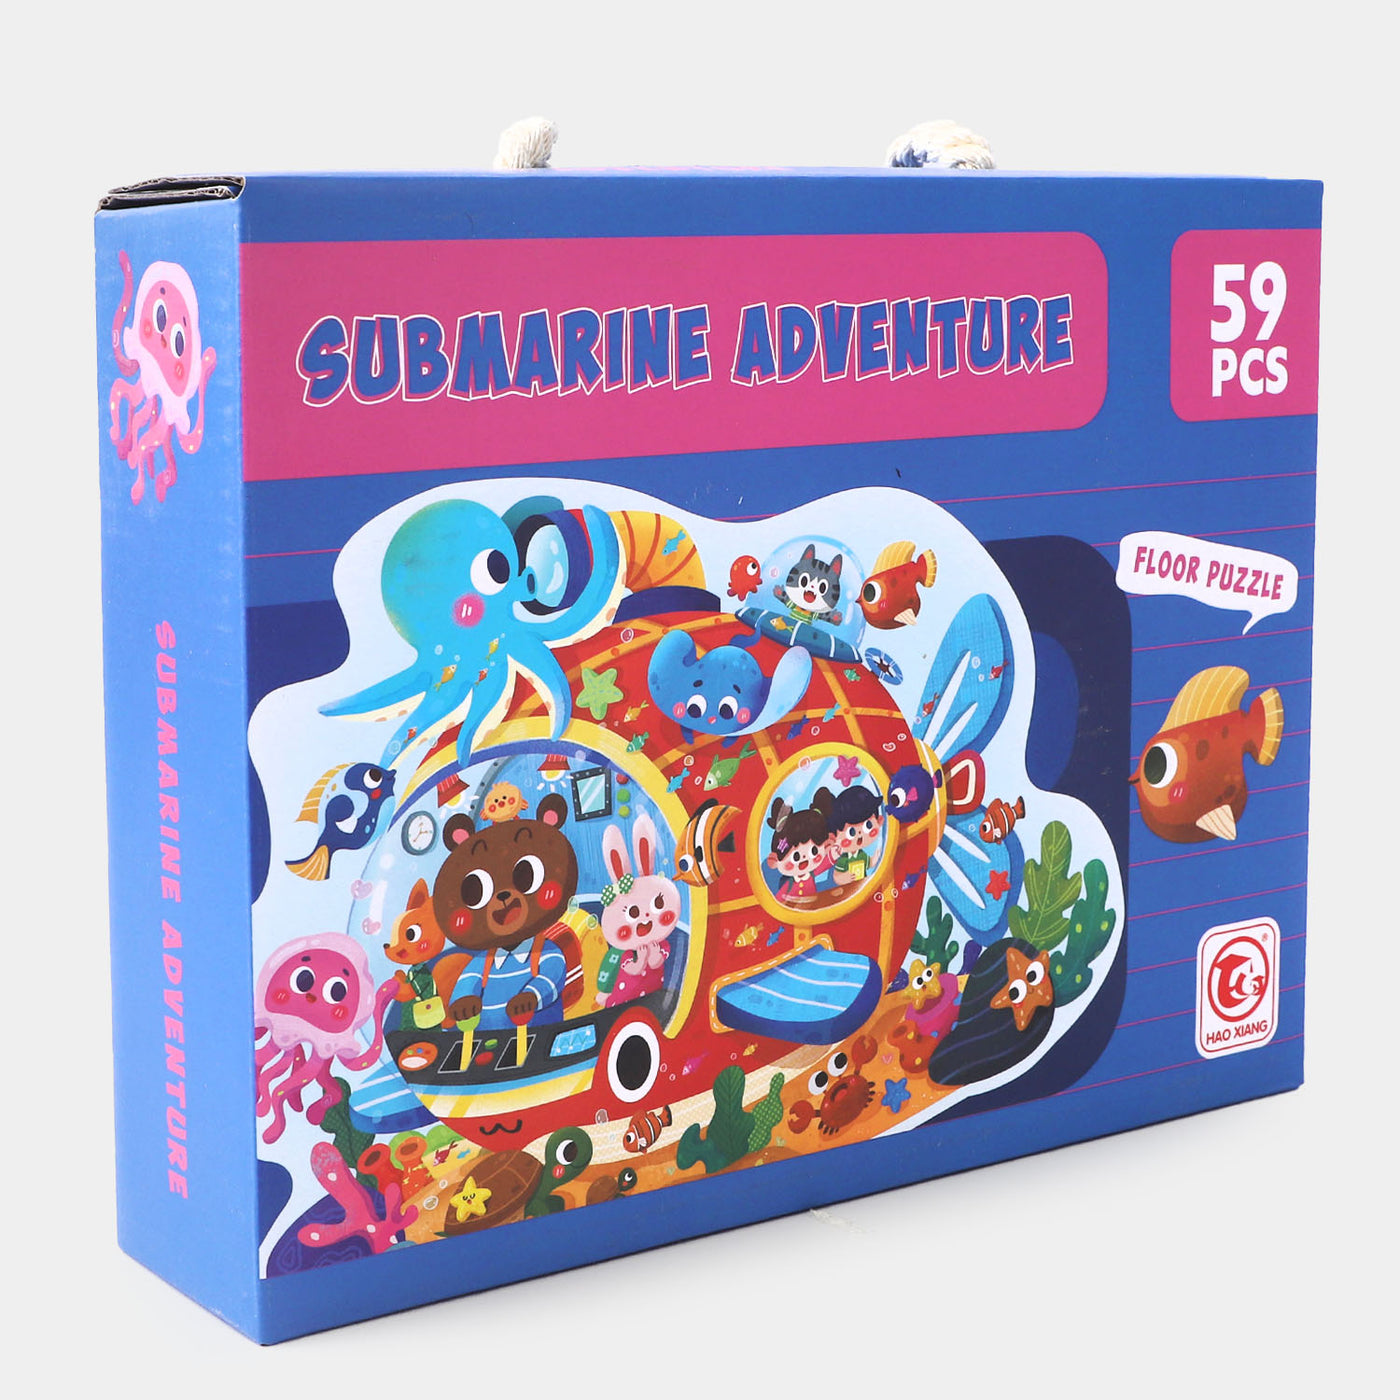 Submarine Adventure Puzzle 59PCs For Kids